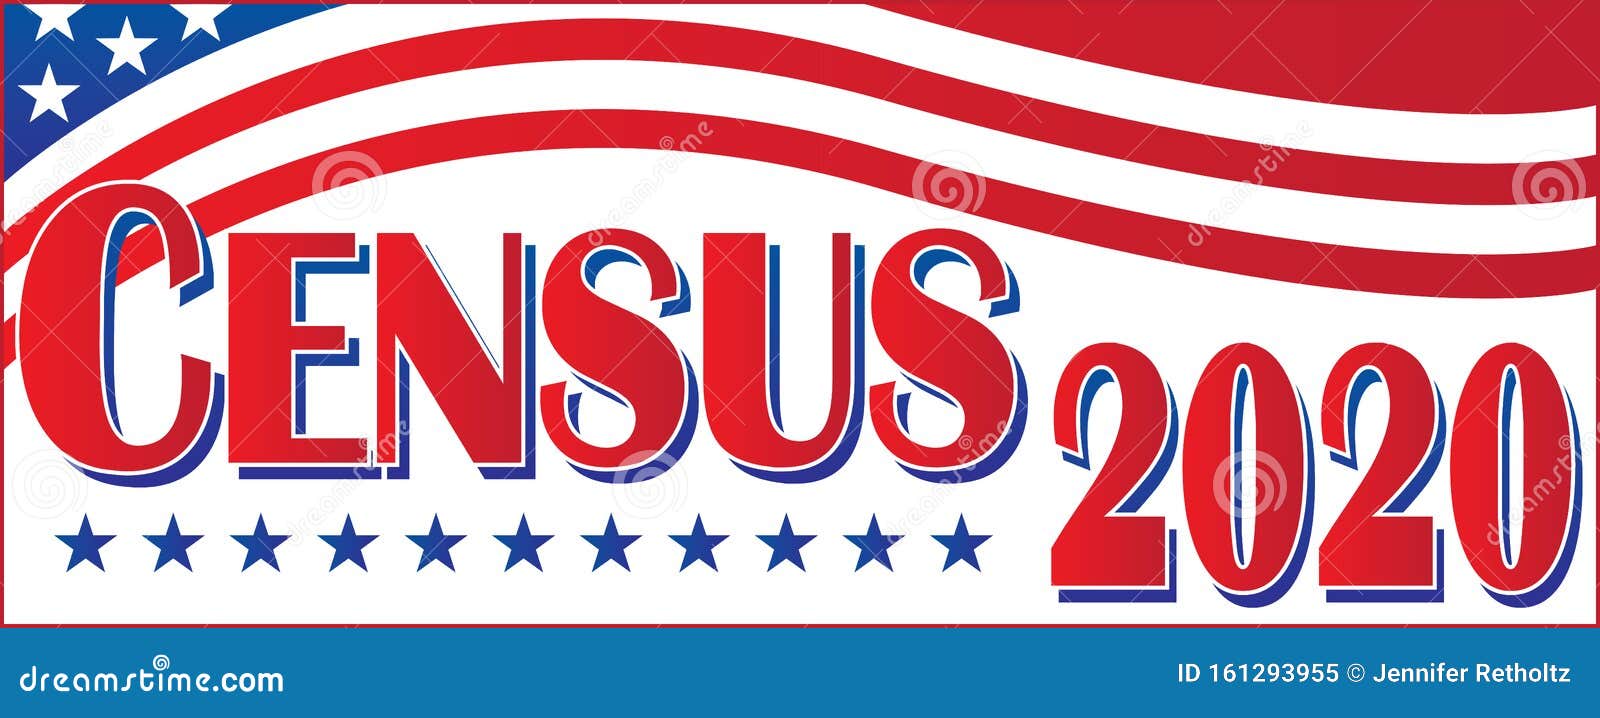 census 2020 united states of america